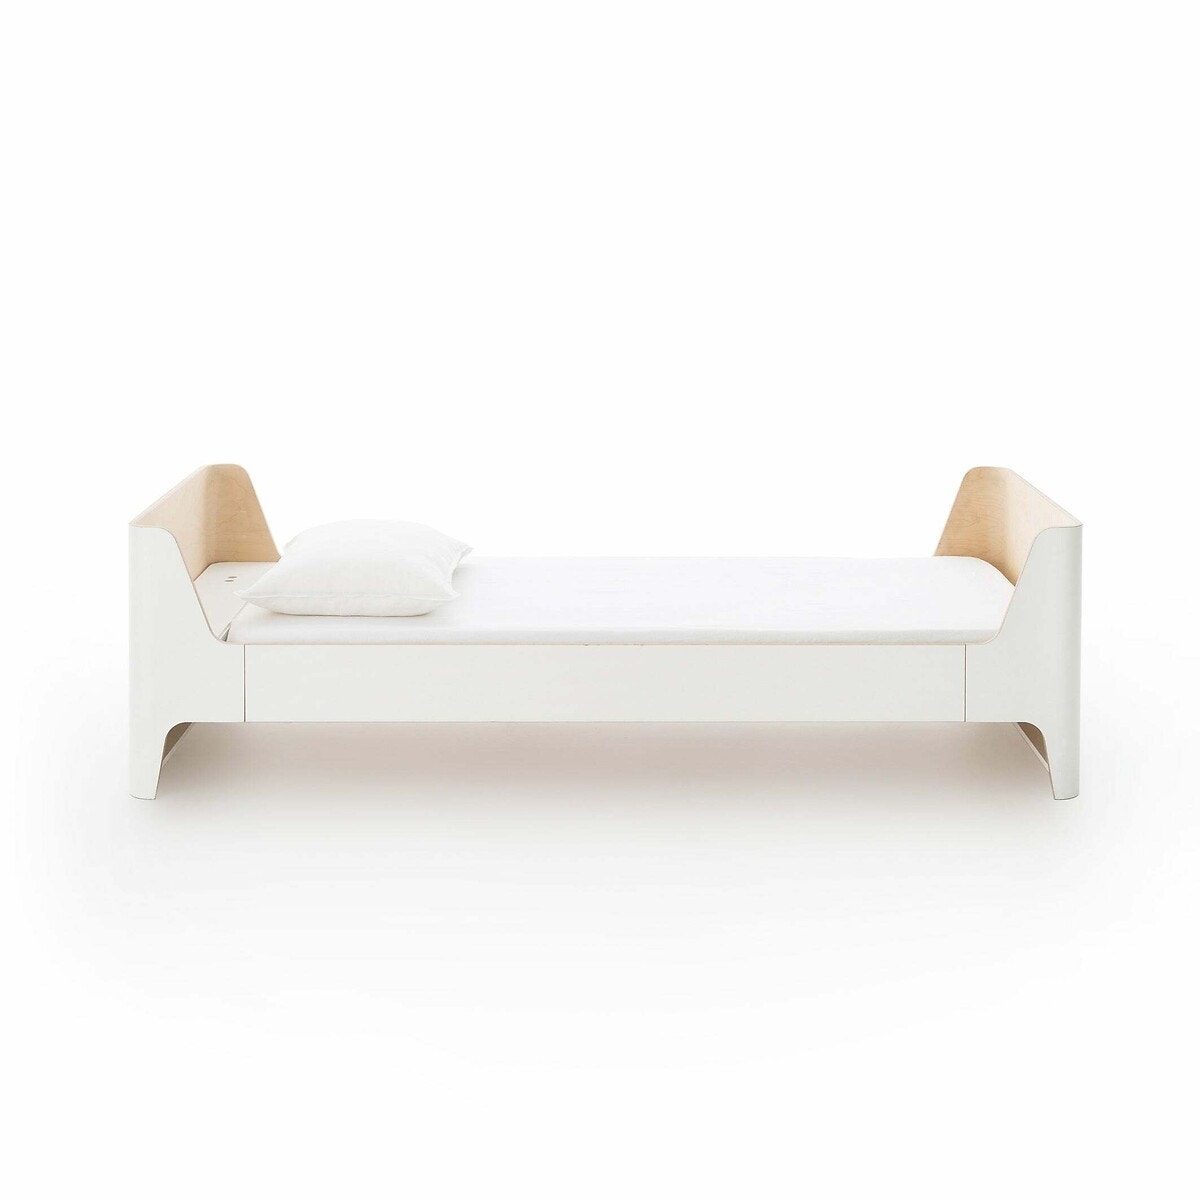 Μονό κρεβάτι Scandi, σχεδίασης E. Gallina